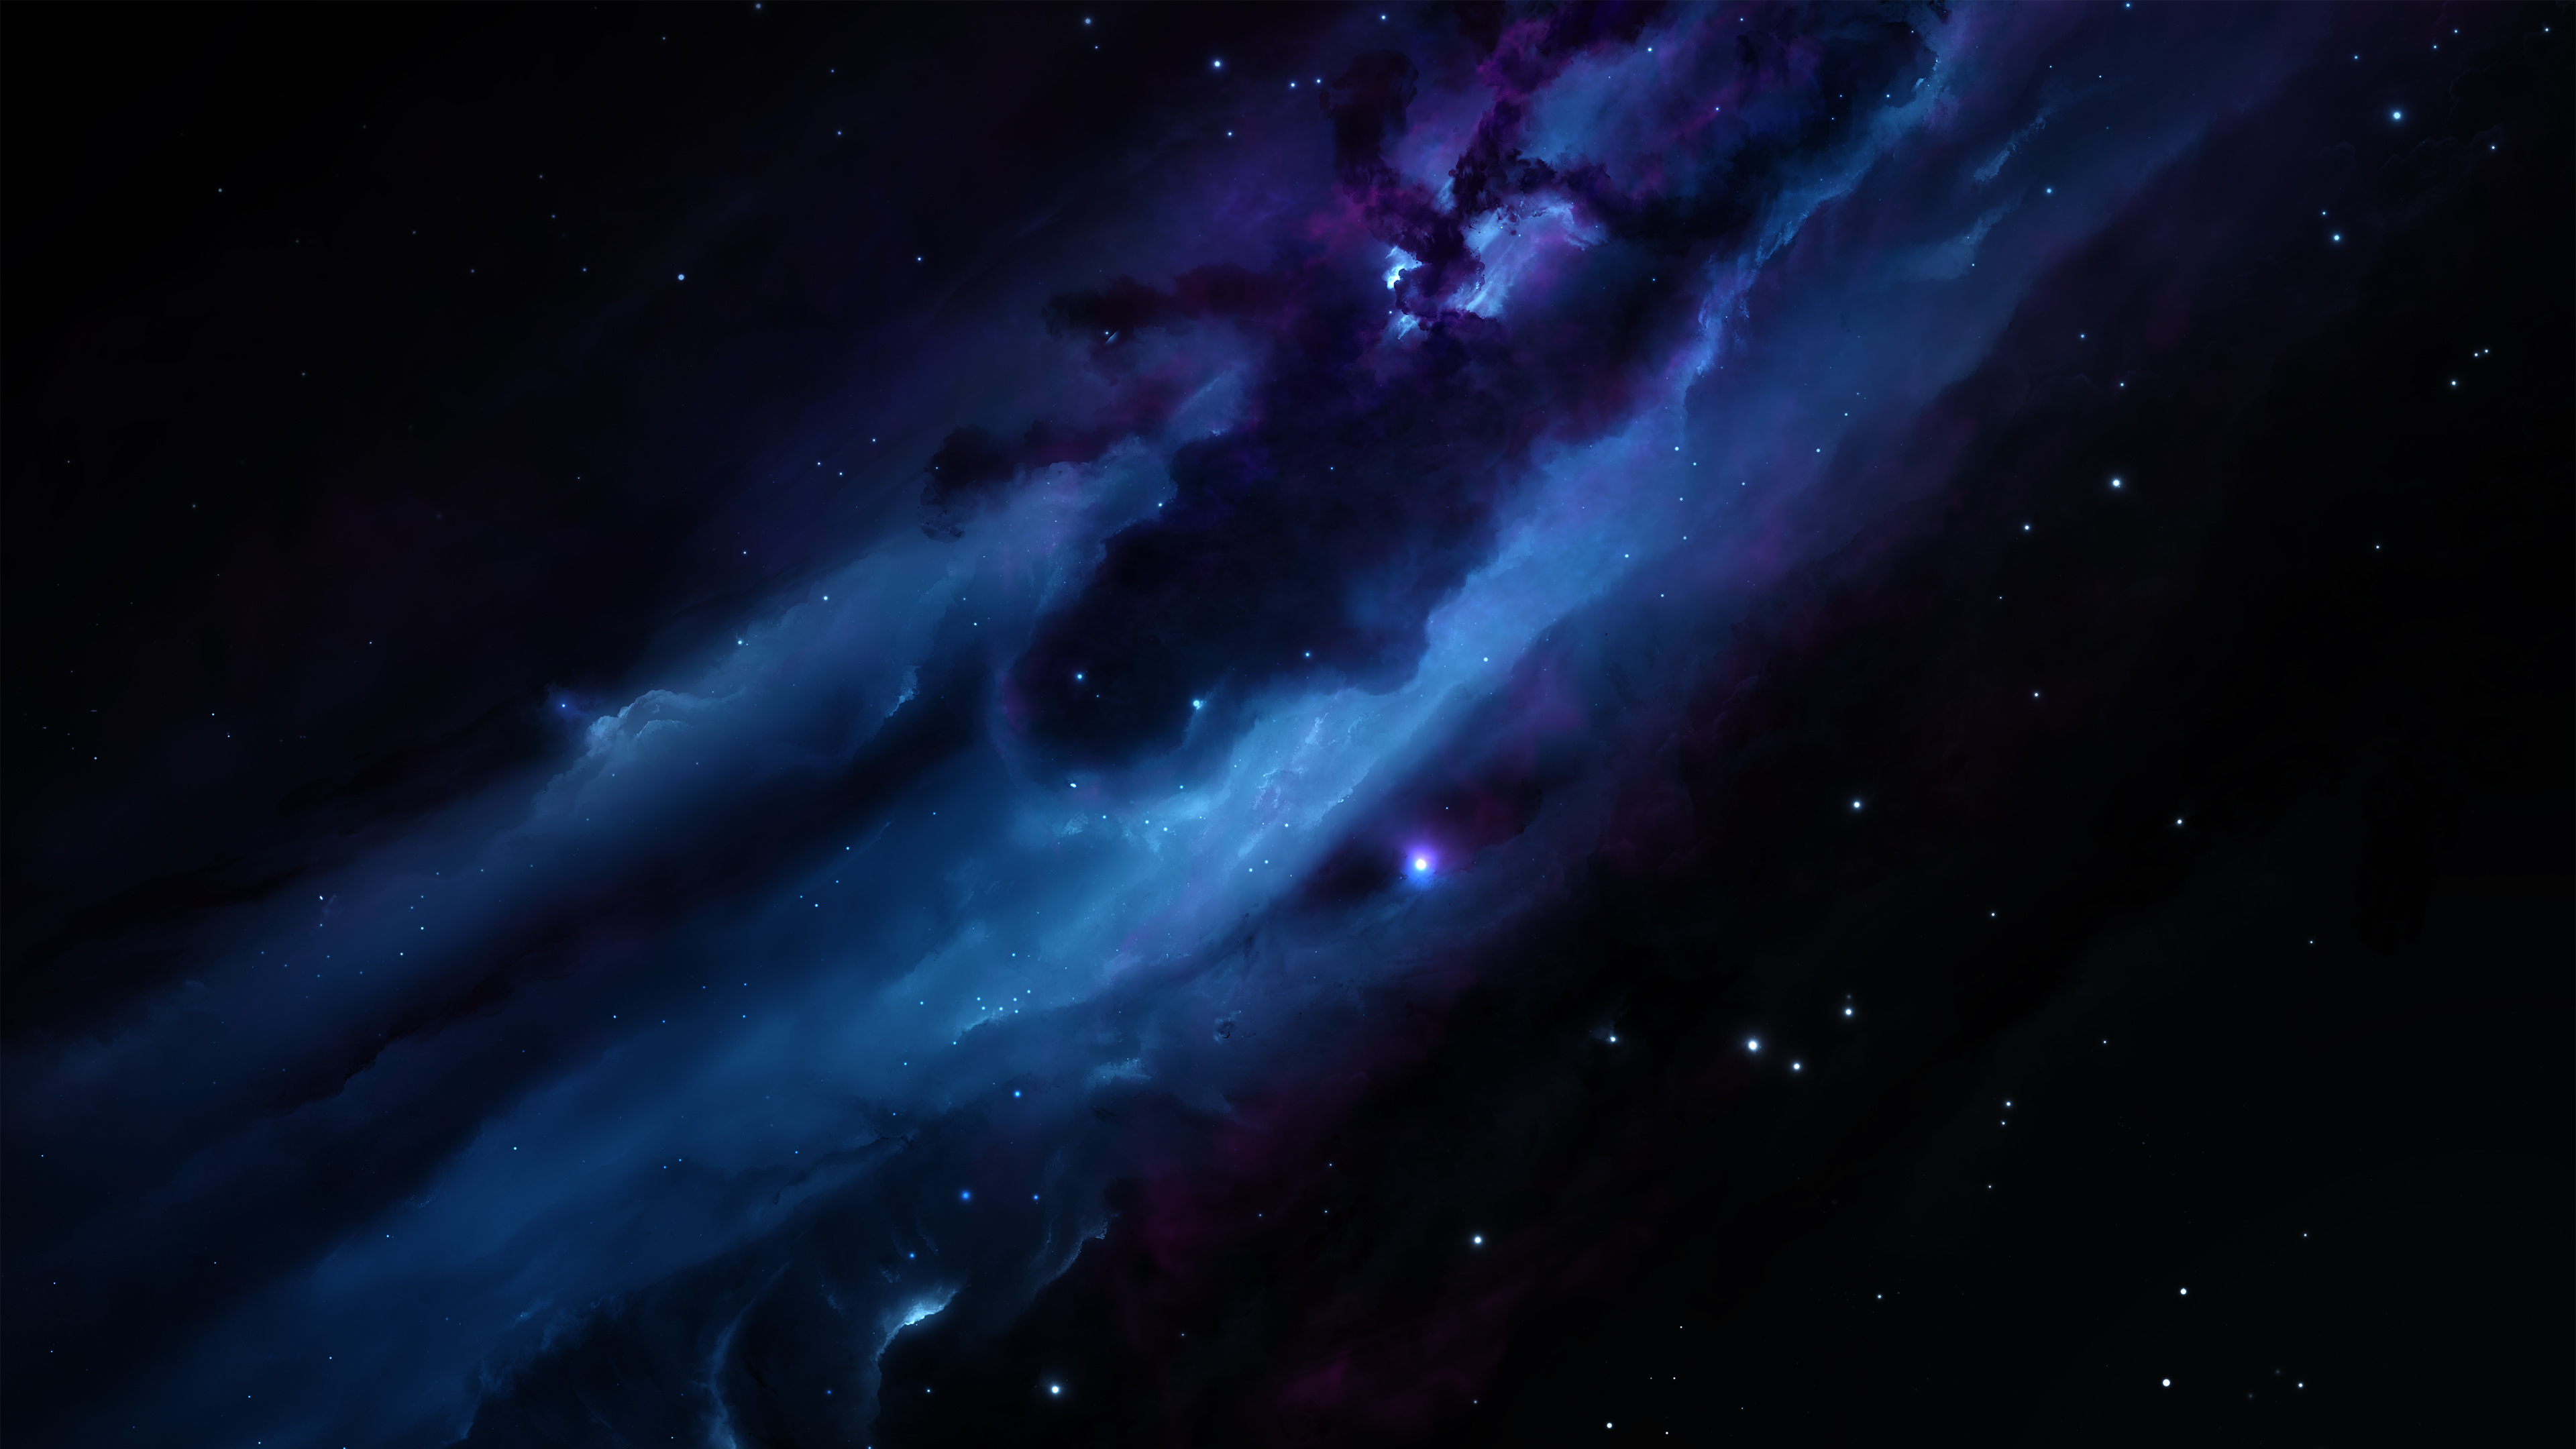 Lila Und Weiße Galaxie Illustration. Wallpaper in 3840x2160 Resolution